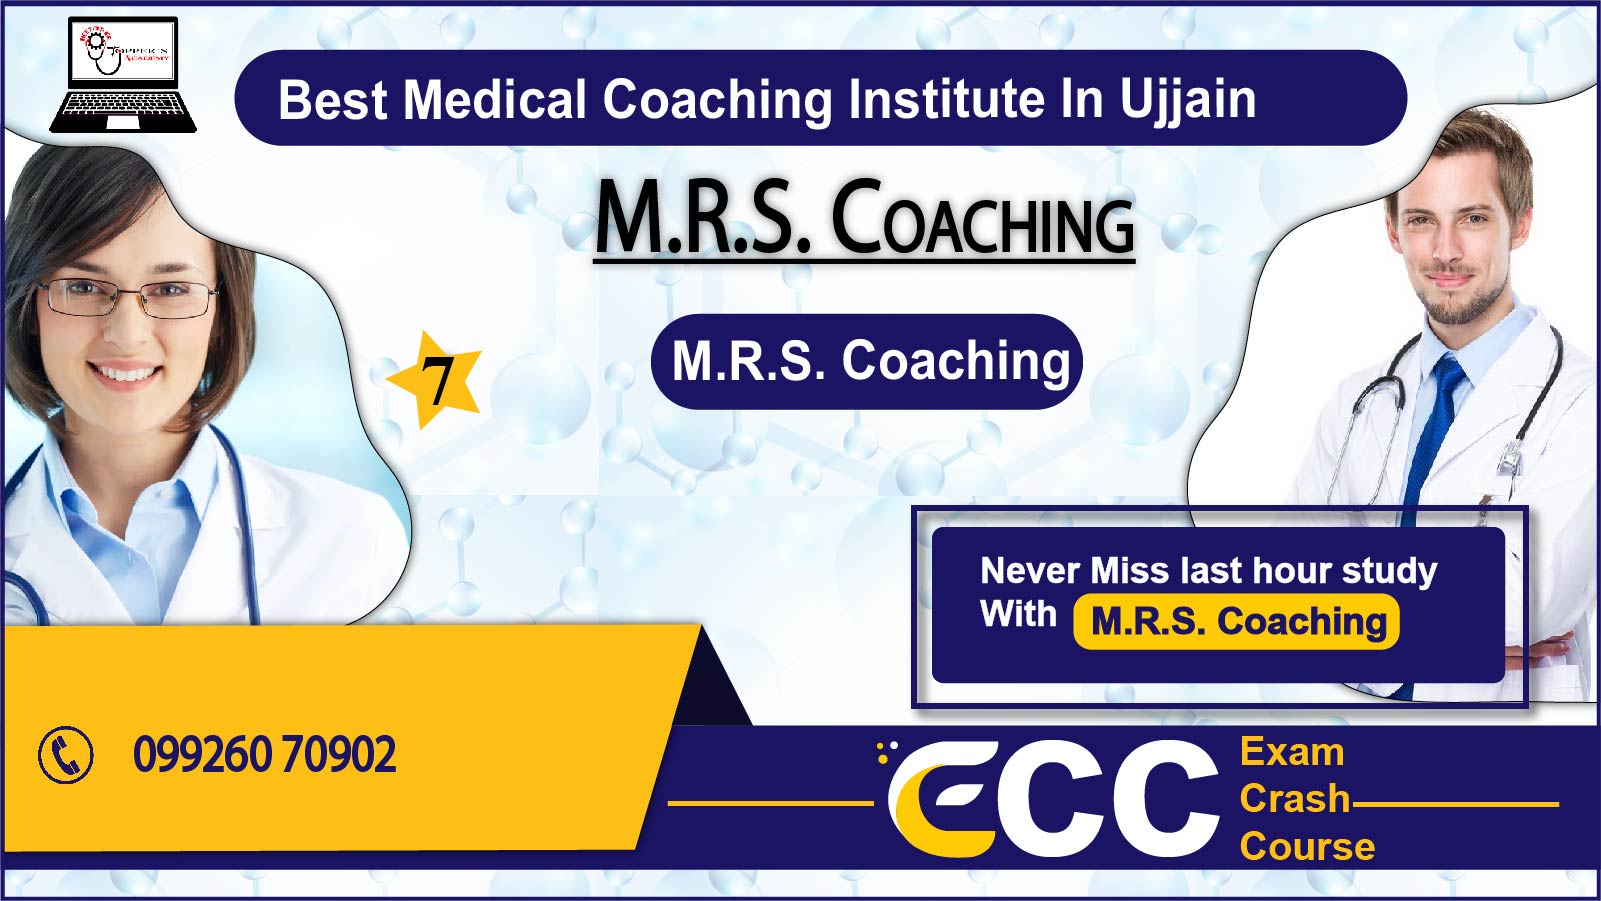 M.R.S. NEET Coaching in Ujjain